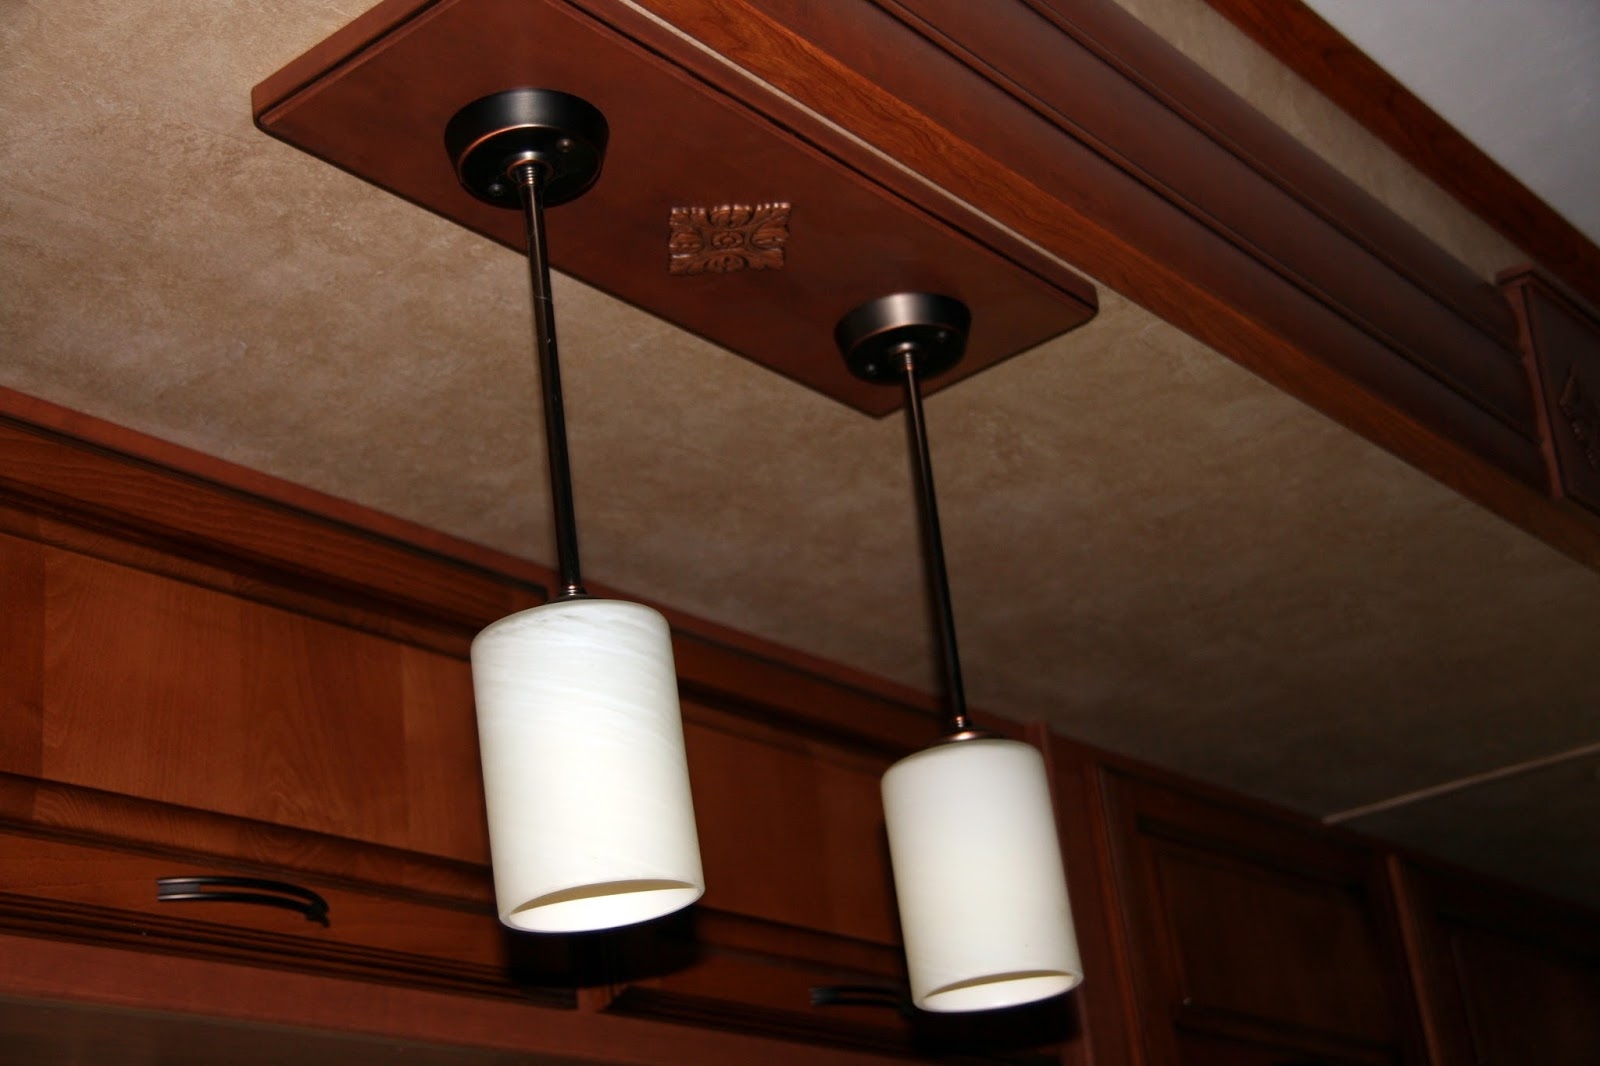 Rv Ceiling Light Coverrv light fixtures home lighting insight